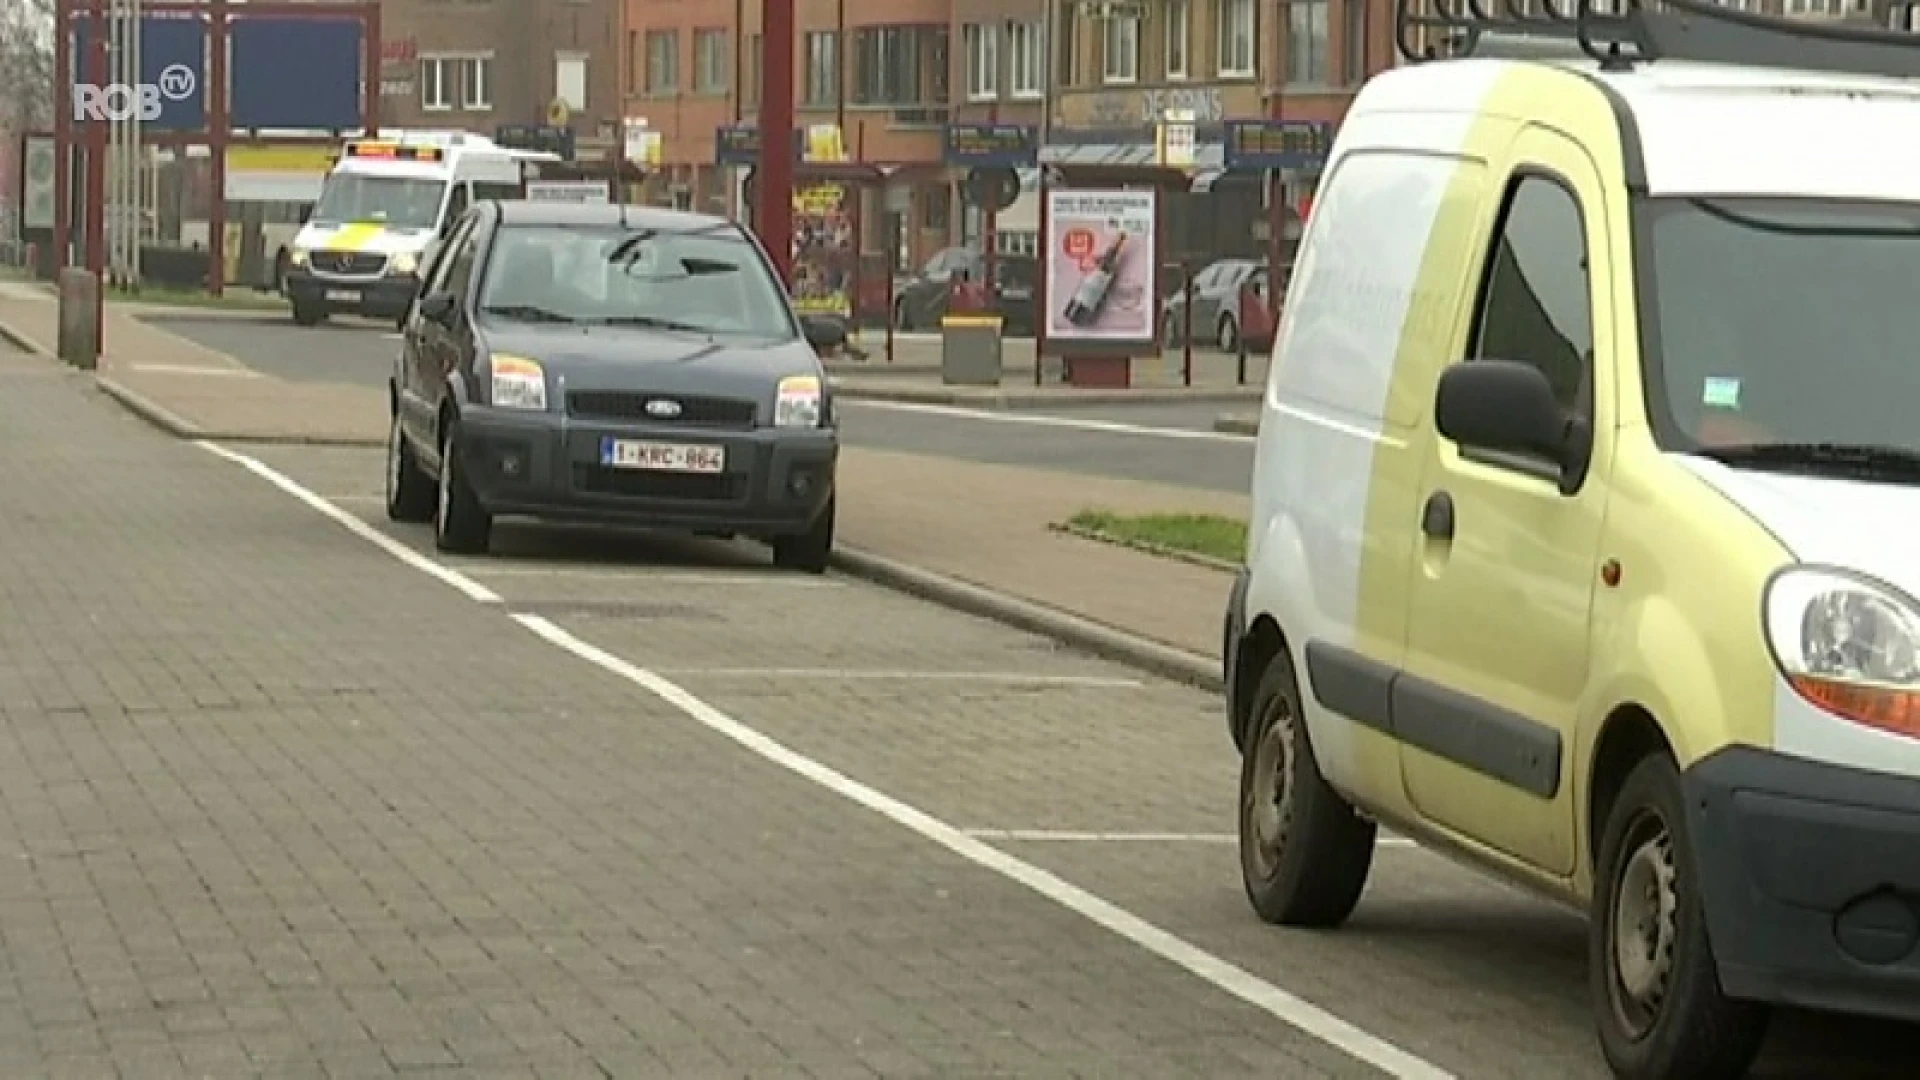 Gratis parkeren in Aarschot tot einde coronacrisis